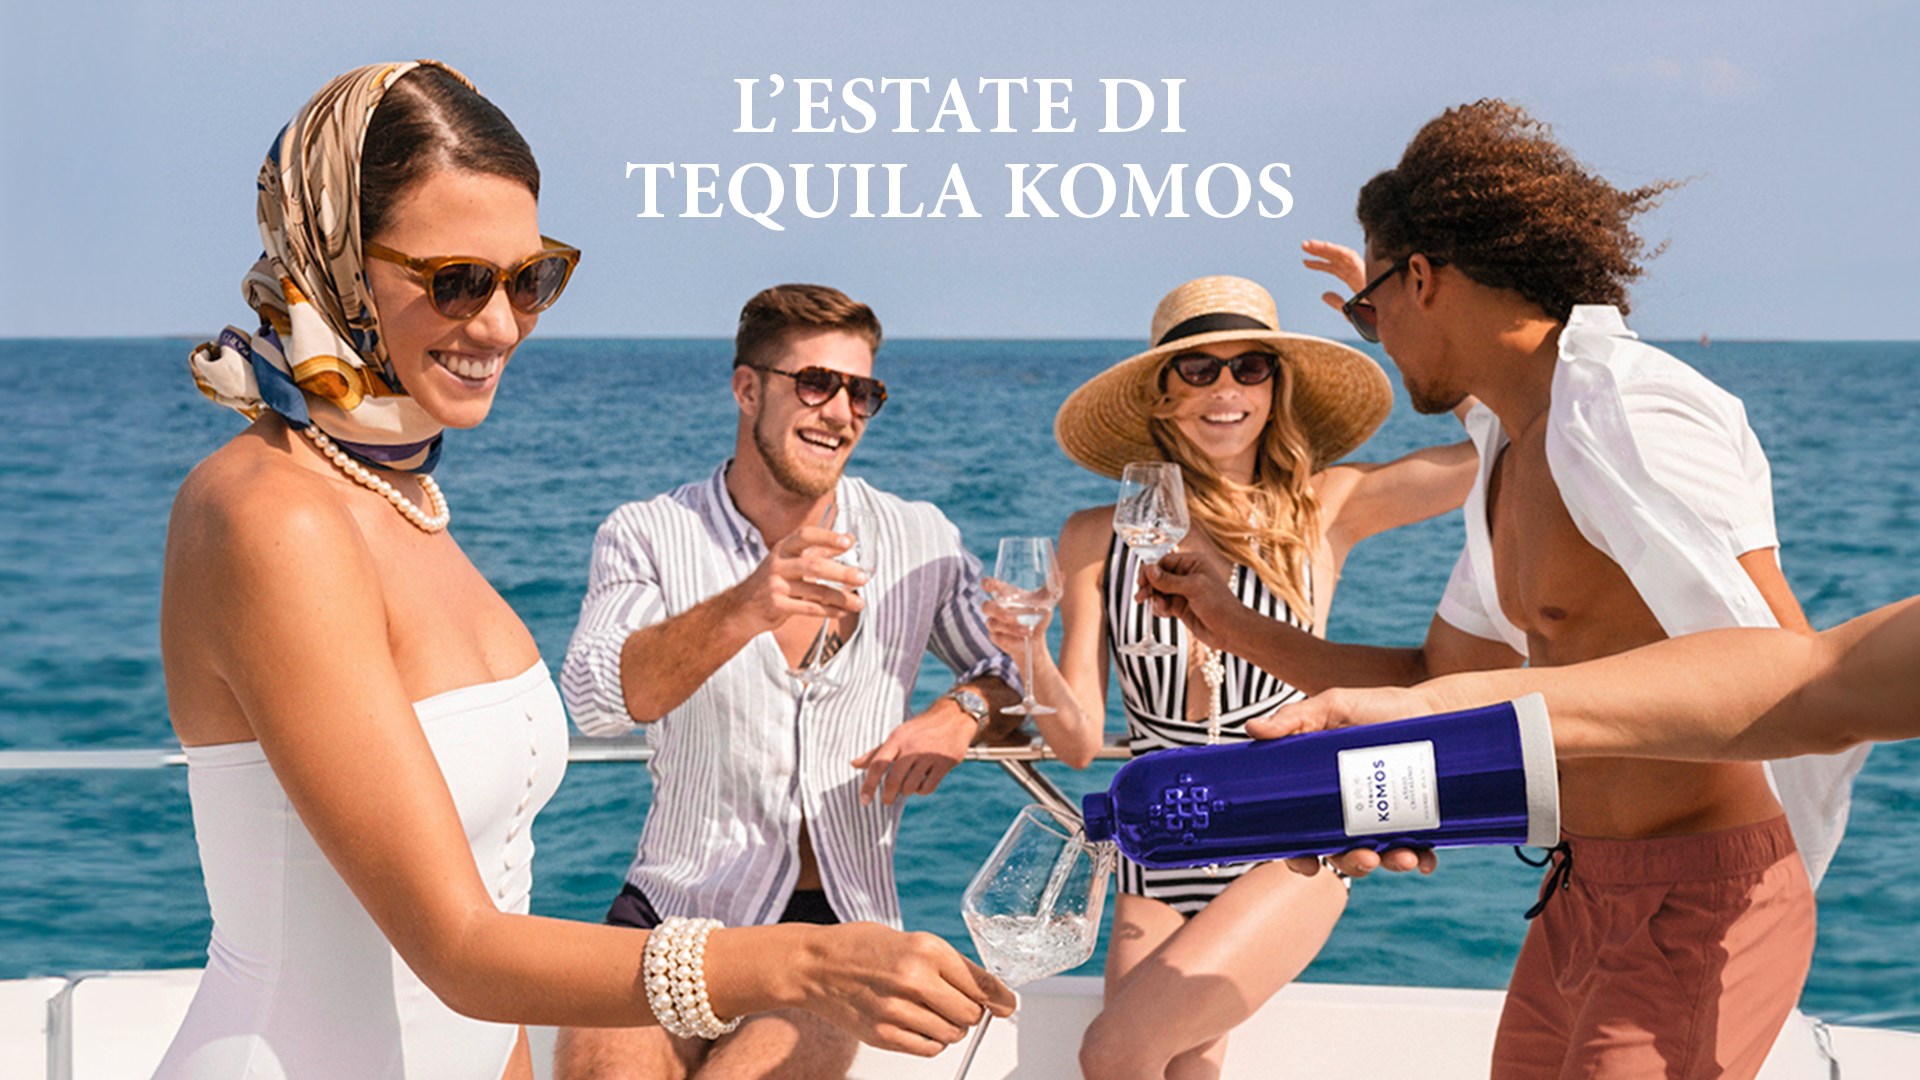 L'estate di Tequila Komos